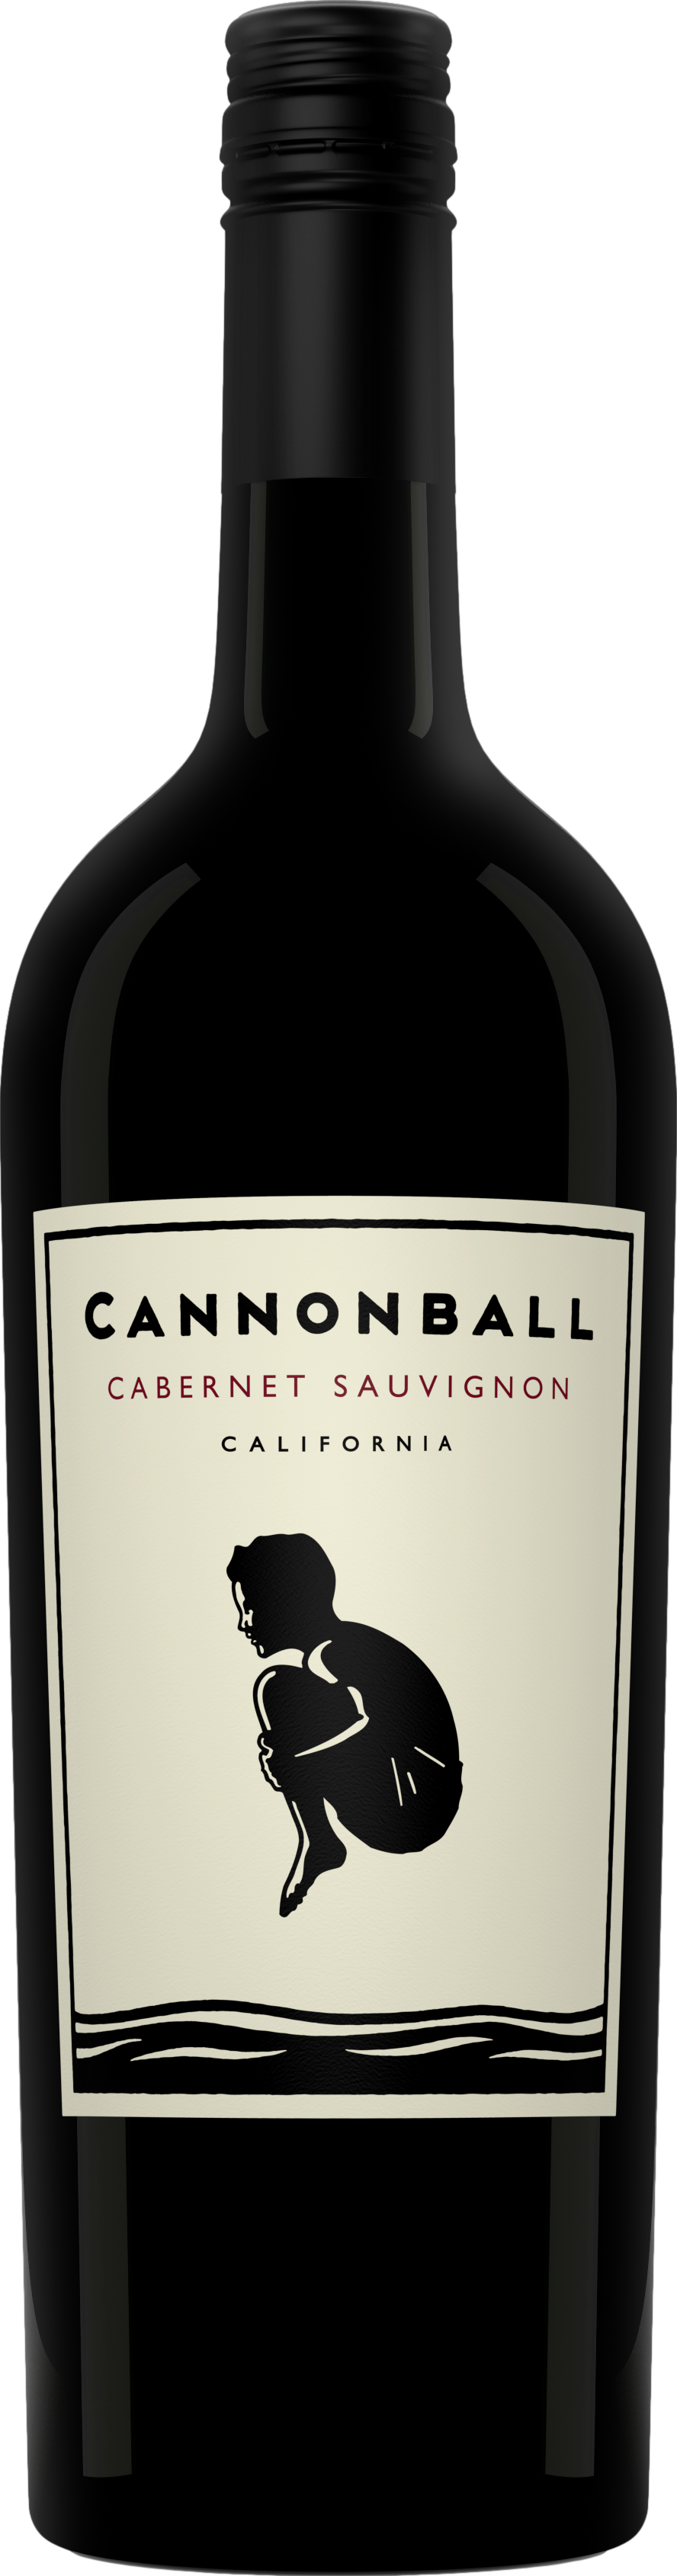 Cannonball Cabernet Sauvignon 2019 Cannonball 8wines DACH